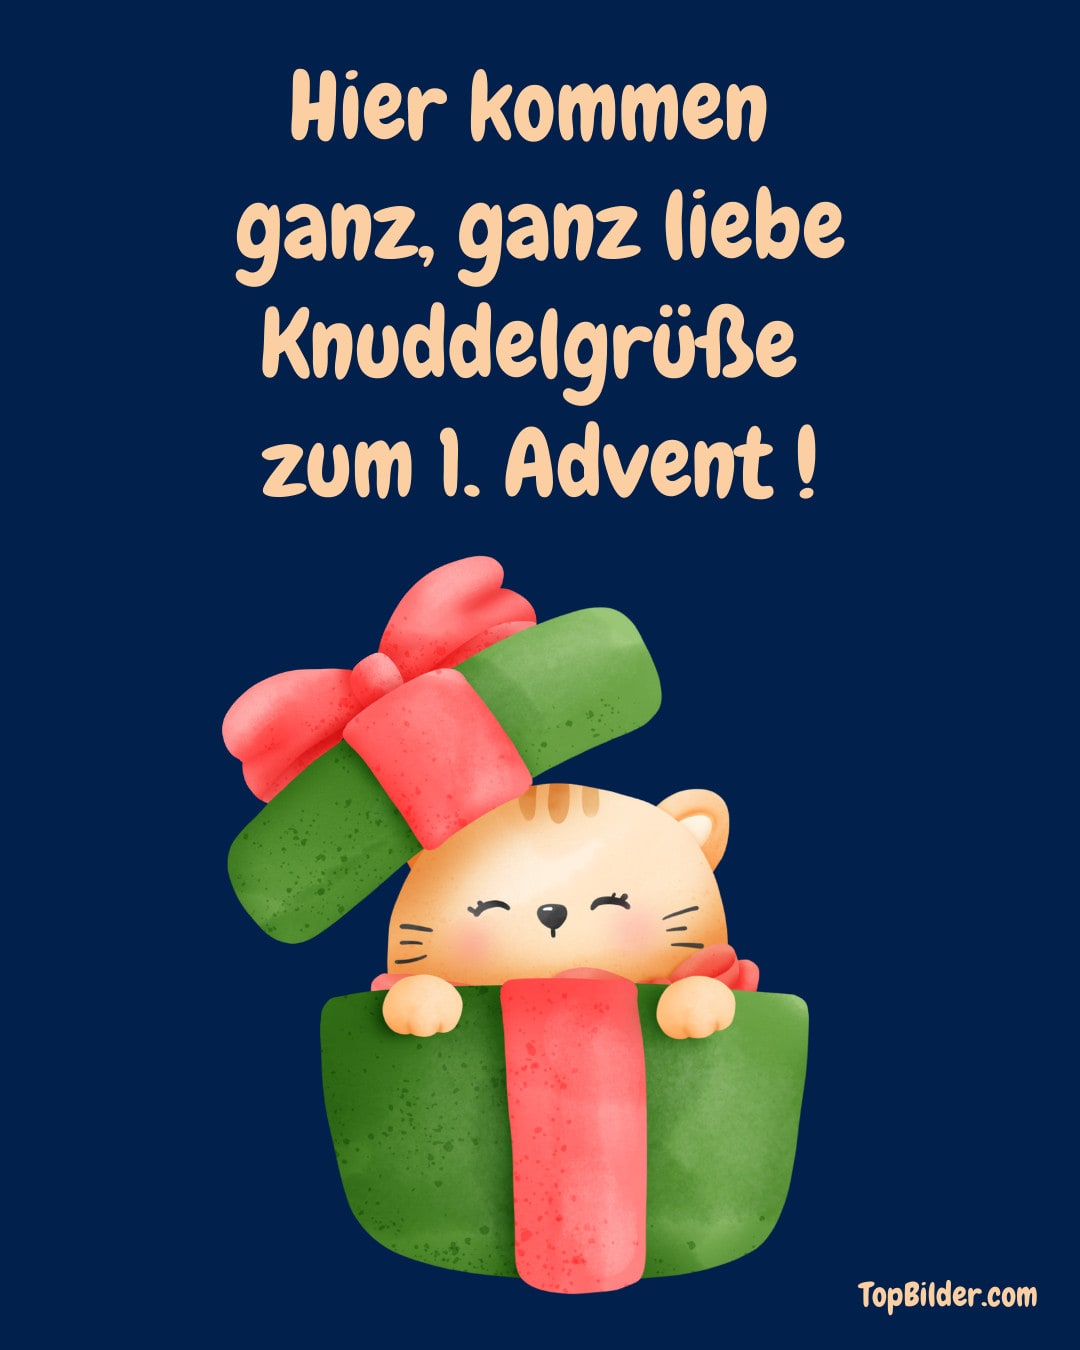 Cartoon Kätzchen in Geschenkbox mit Text: Knuddelgrüße zum 1. Advent